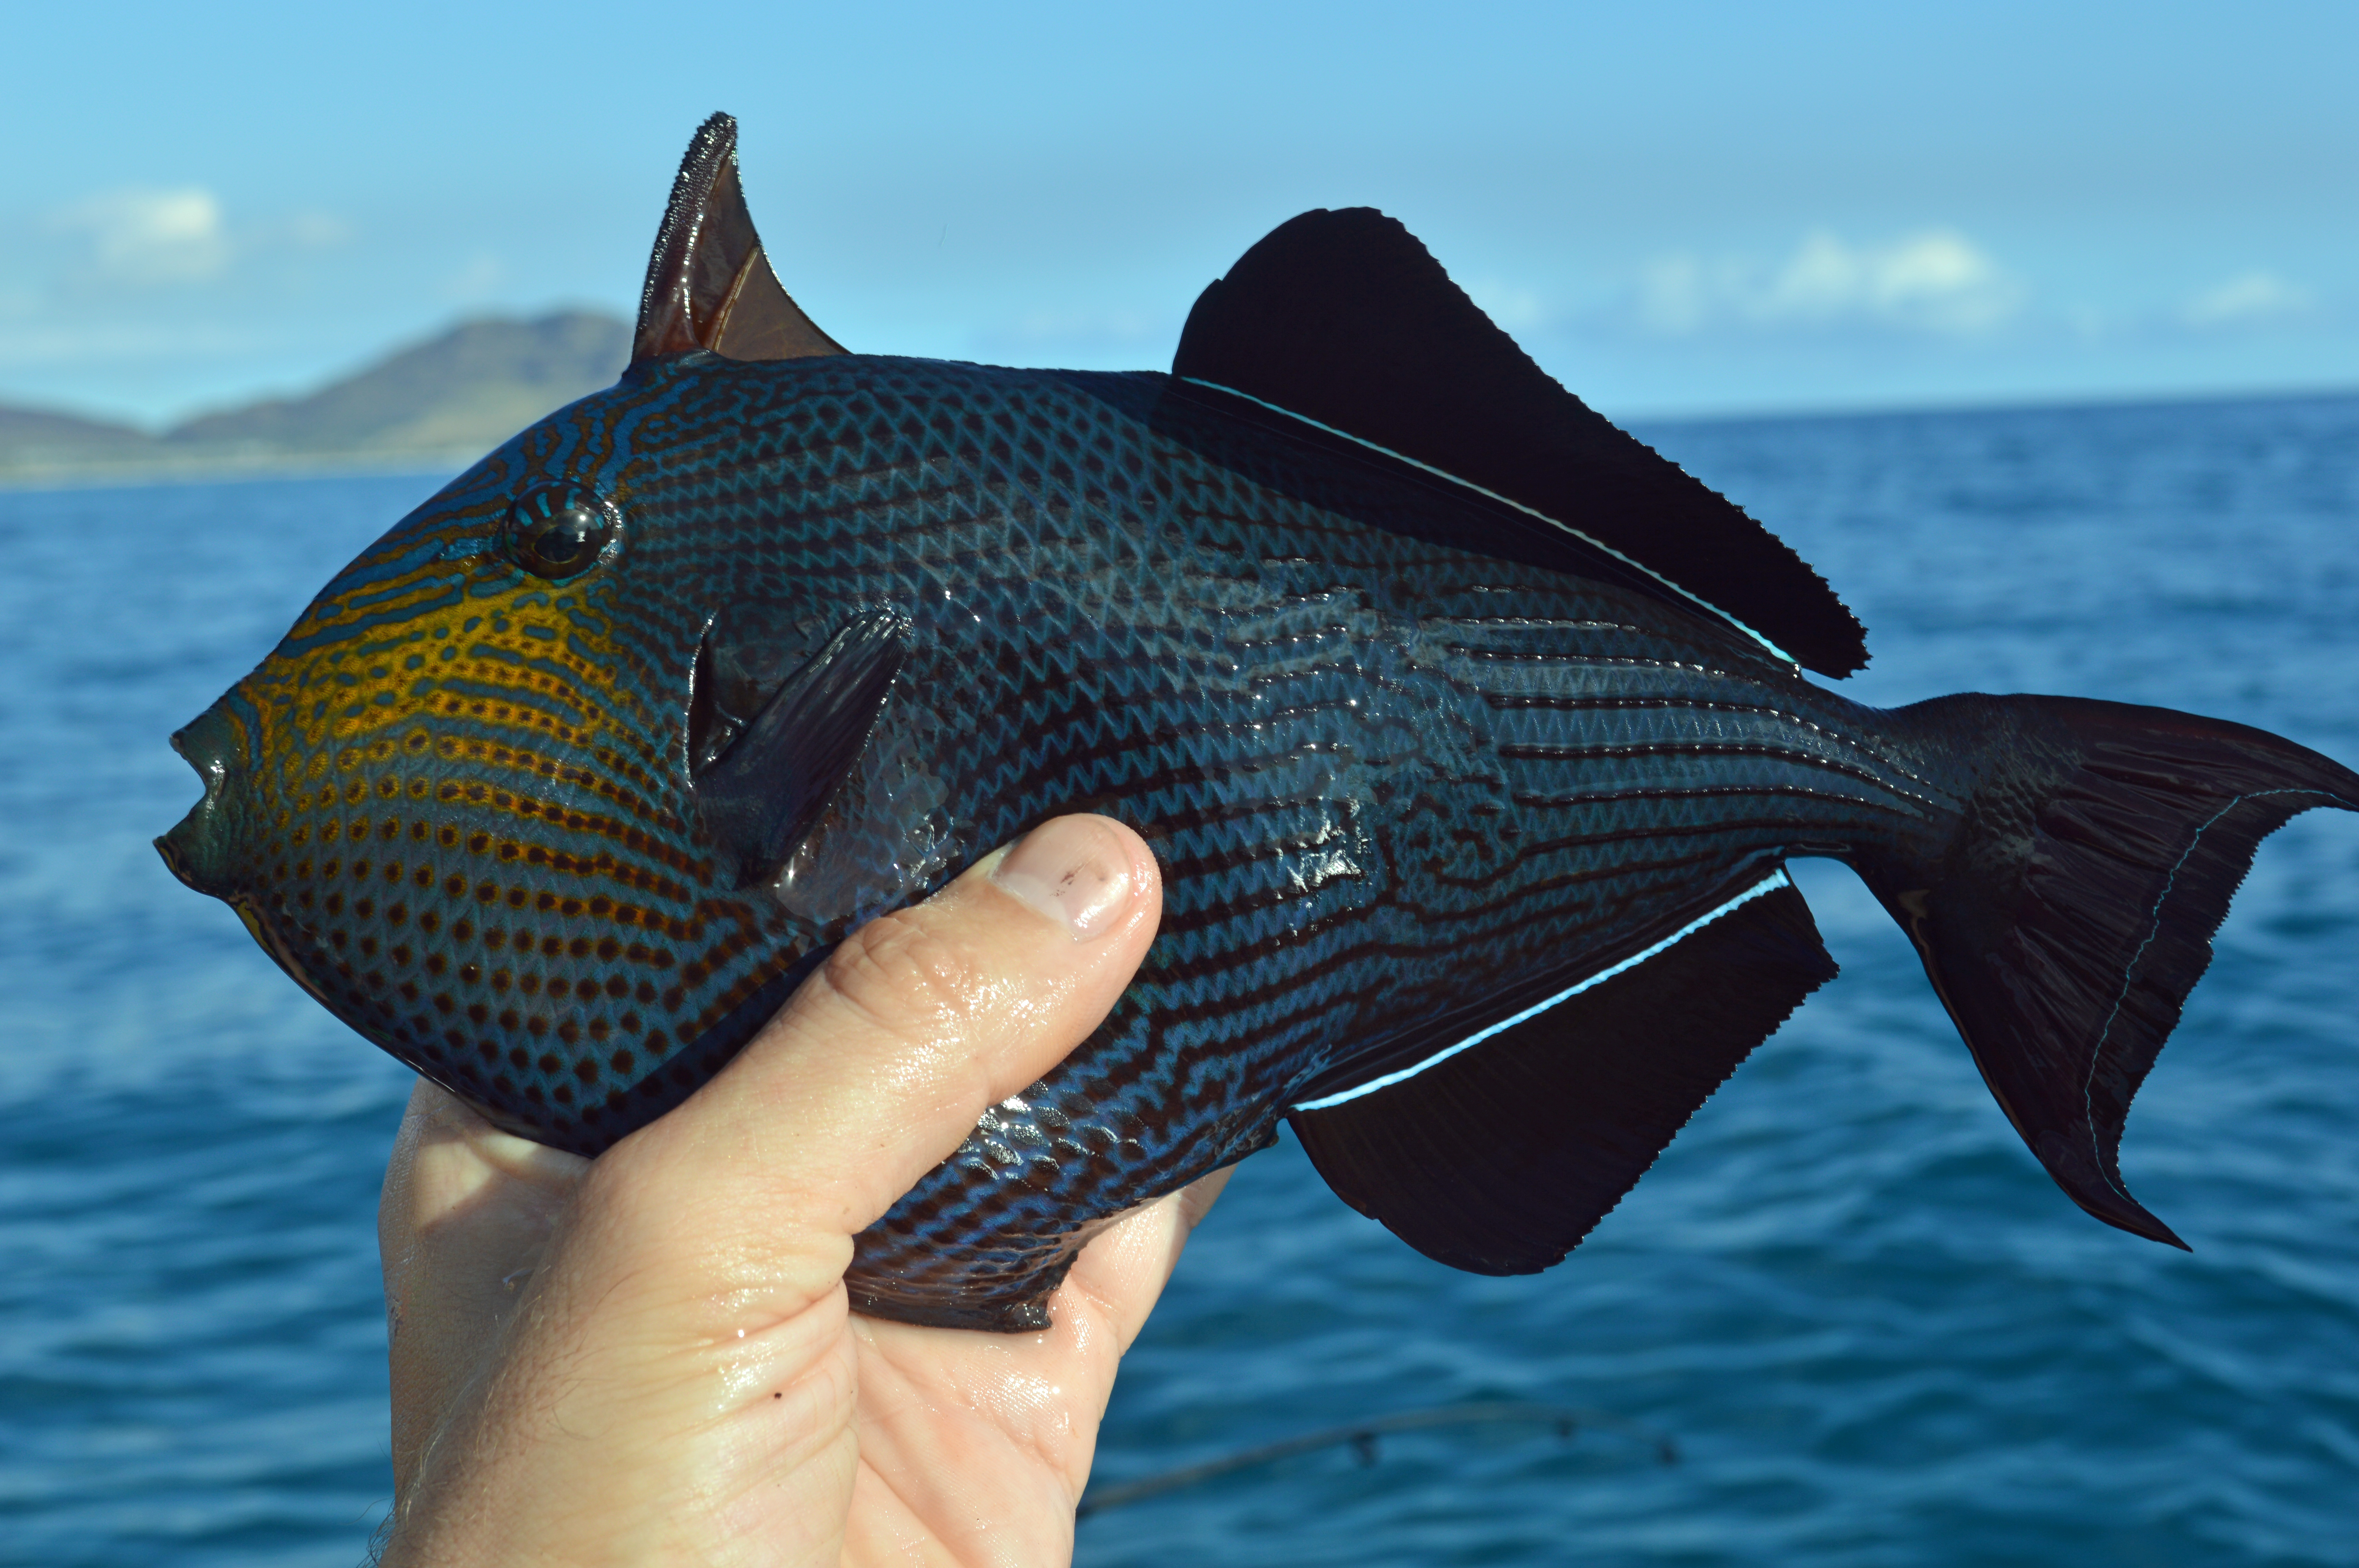 Black triggerfish, May 2017, Pokai Bay, island of Oahu, Hawaii